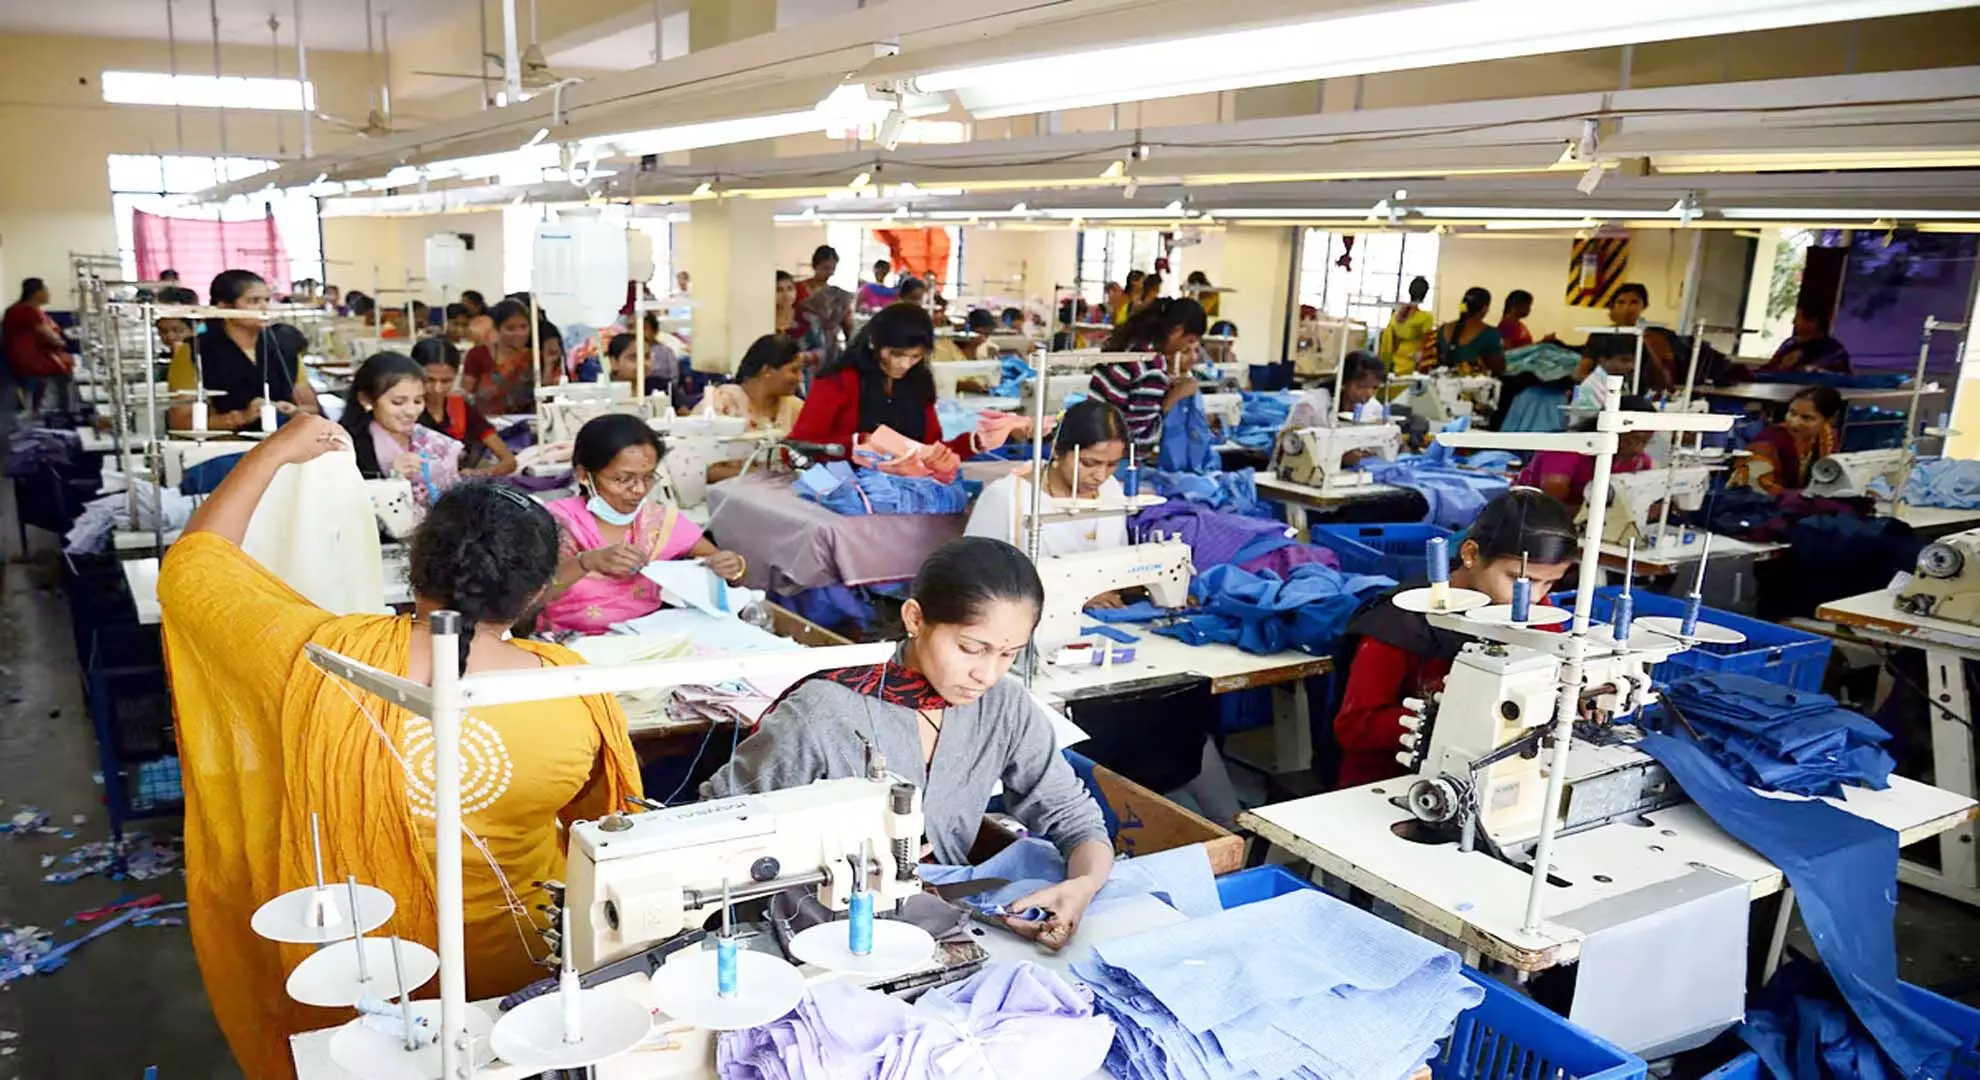 तिरुपुर के कपड़ा उद्योग में मध्यस्थों पर निर्भर प्रवासी श्रमिक